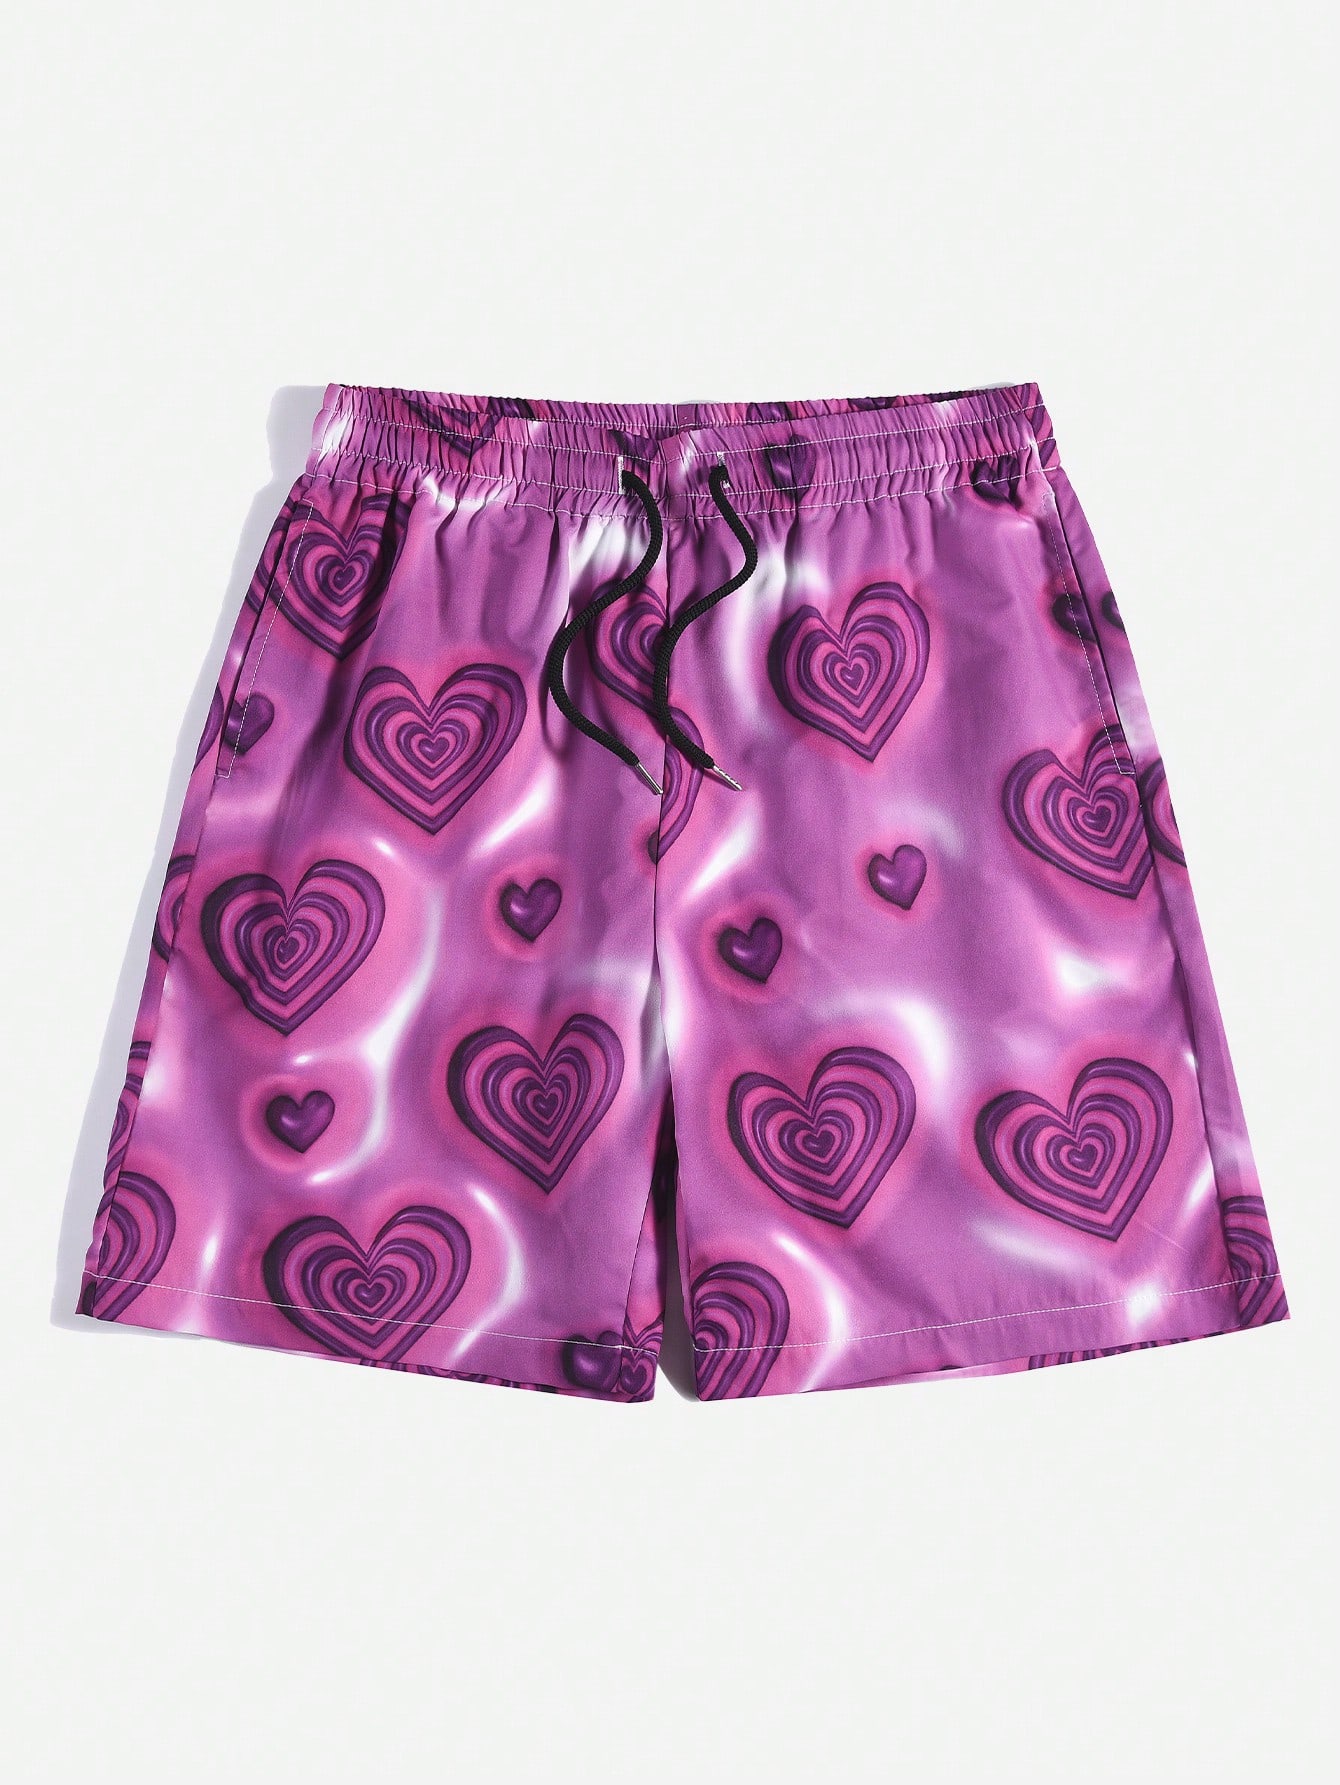 Мужские шорты с принтом сердечек ROMWE Street Life, фиолетовый